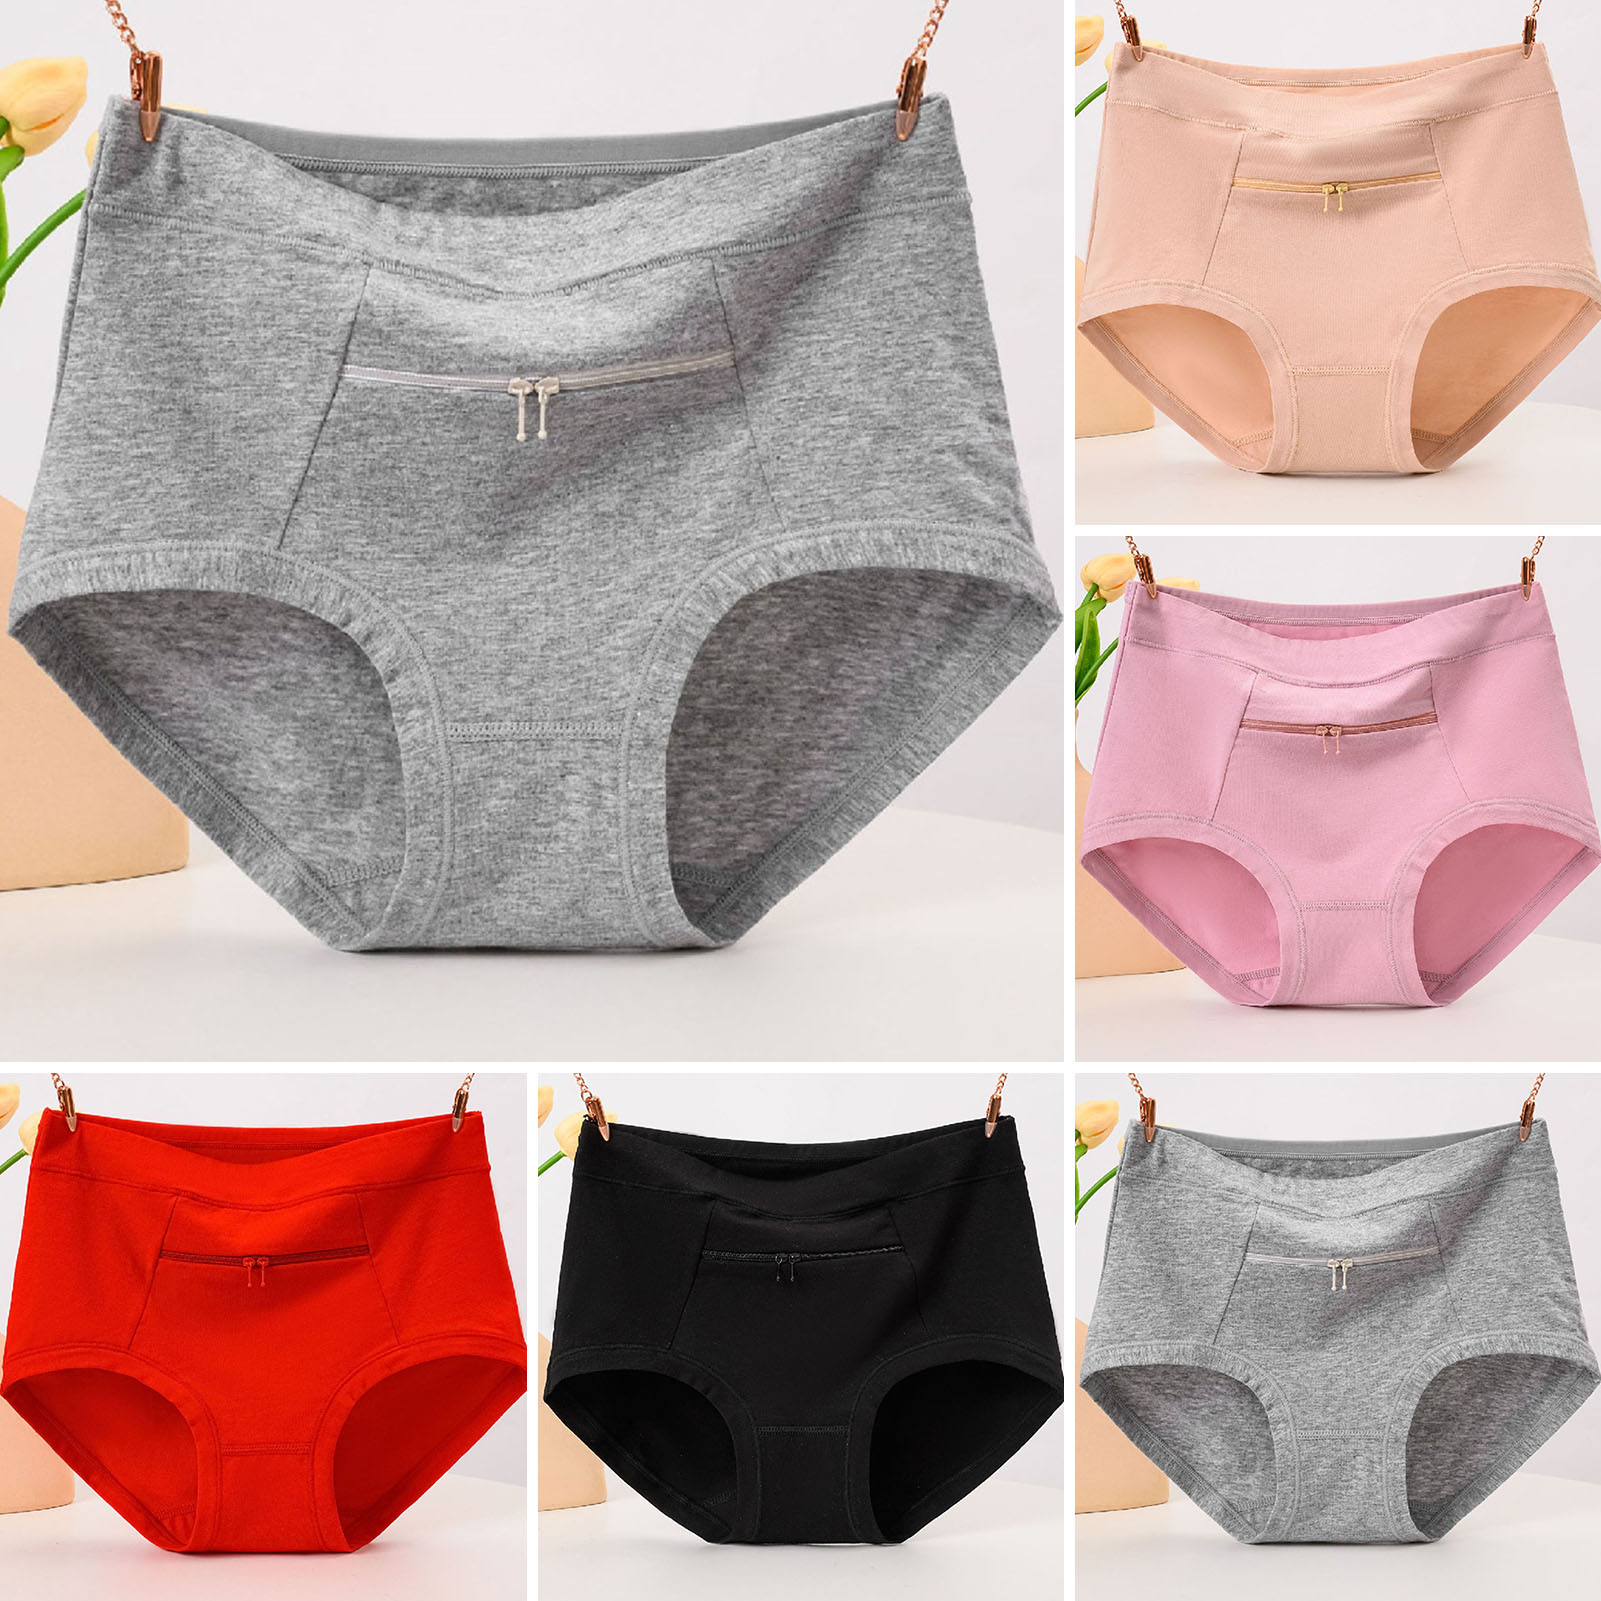 New Design High Waist Women's Underwear Pocket Design Anti-Theft